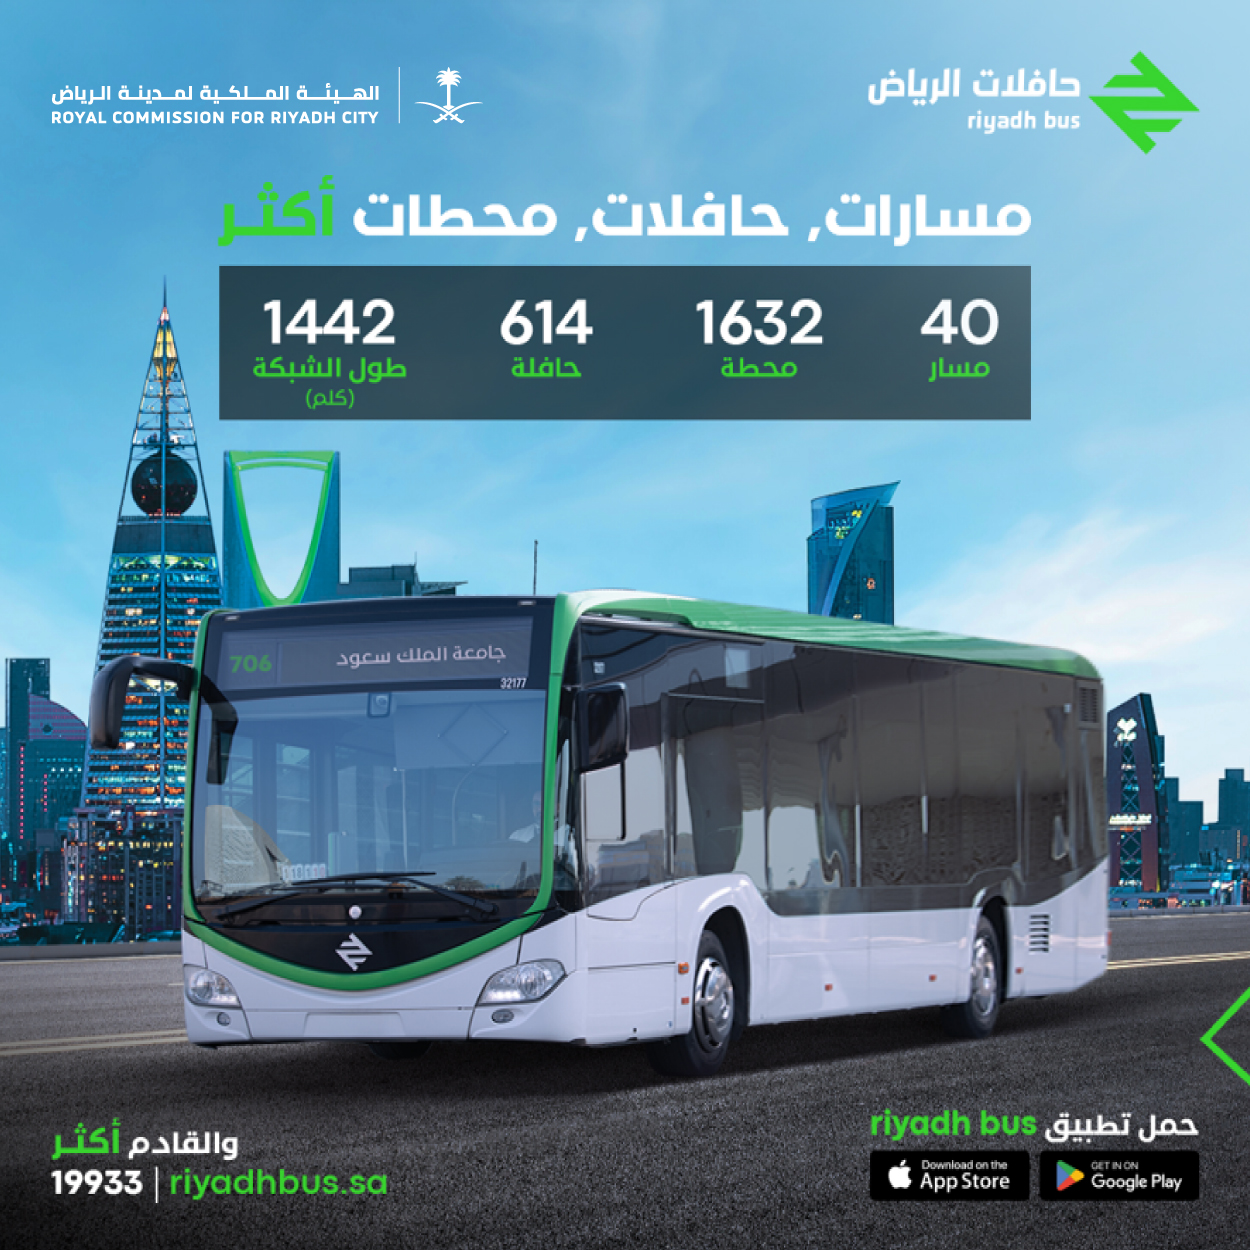 "الهيئة الملكية" تعلن بدء المرحلة الرابعة من خدمة "حافلات الرياض" 3